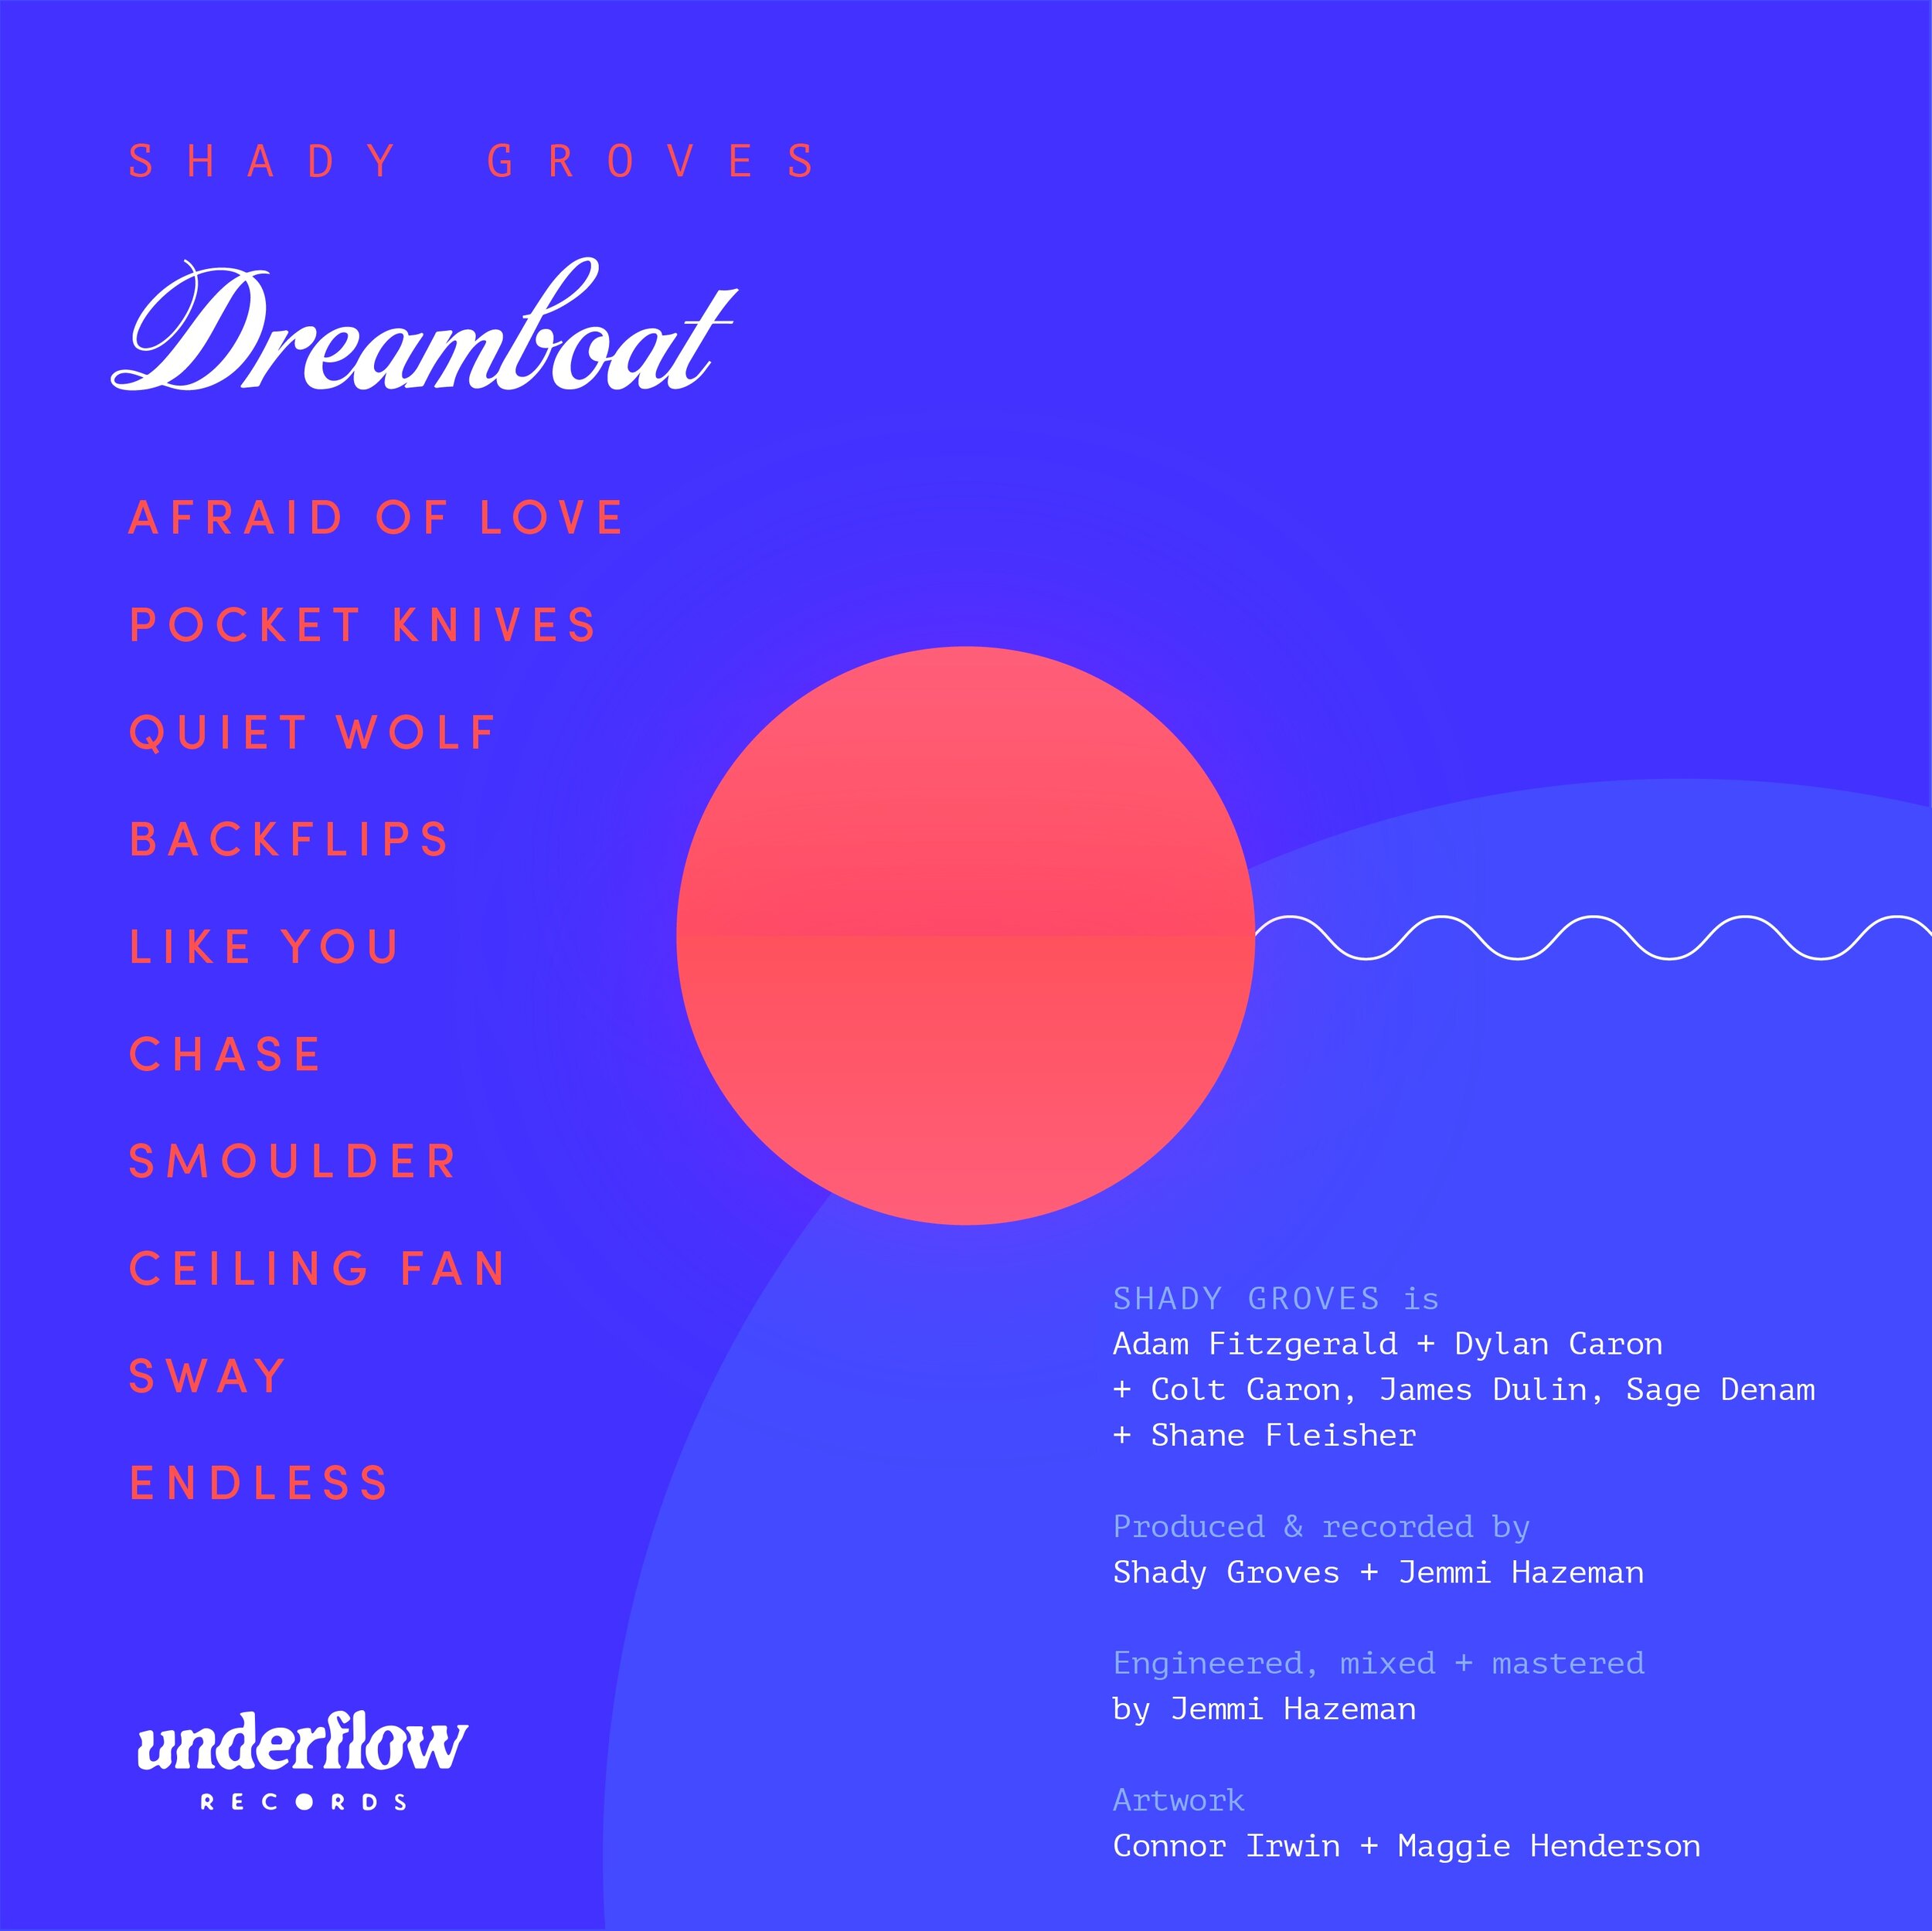 Dreamboat back album art final 2021 by Connor Irwin.jpg